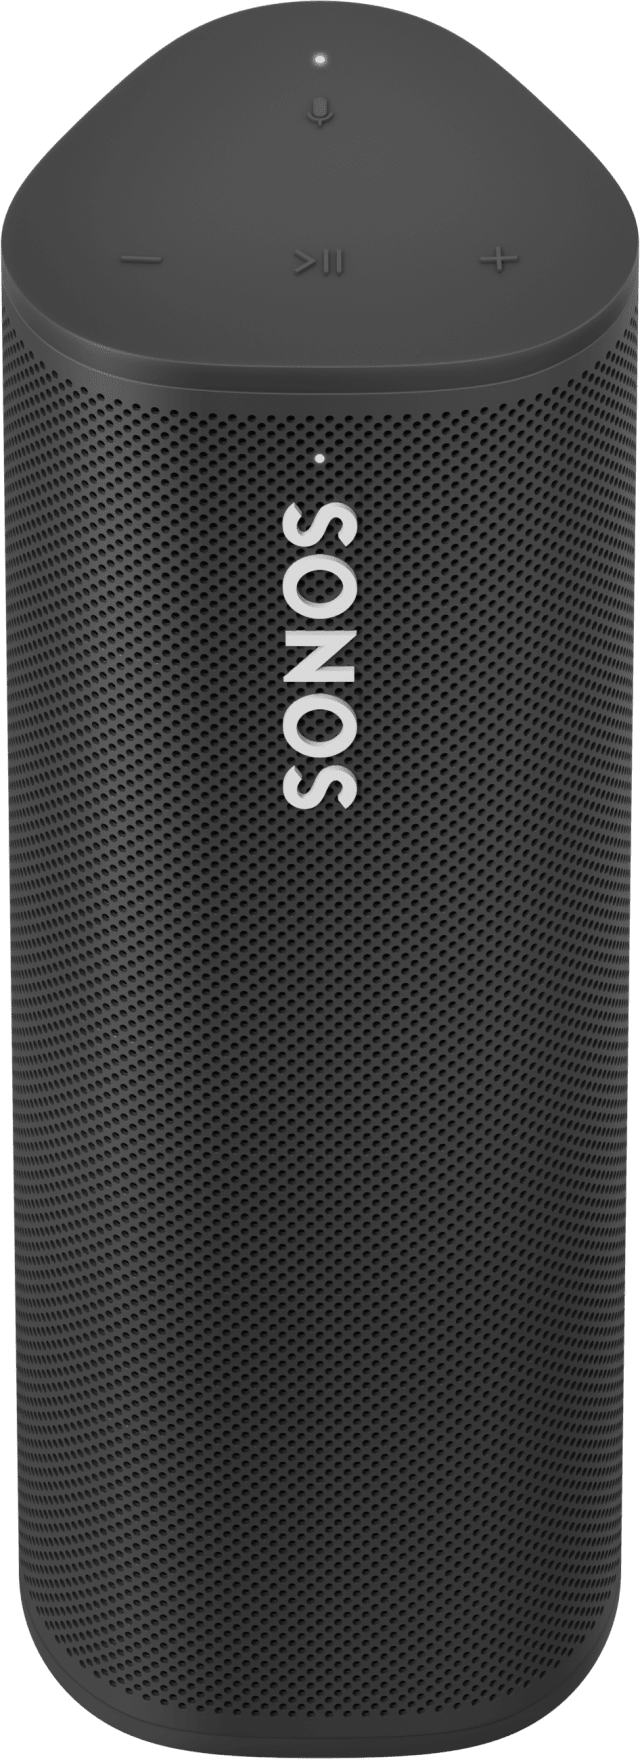 Sonos Roam photo, specs, and price Engadget